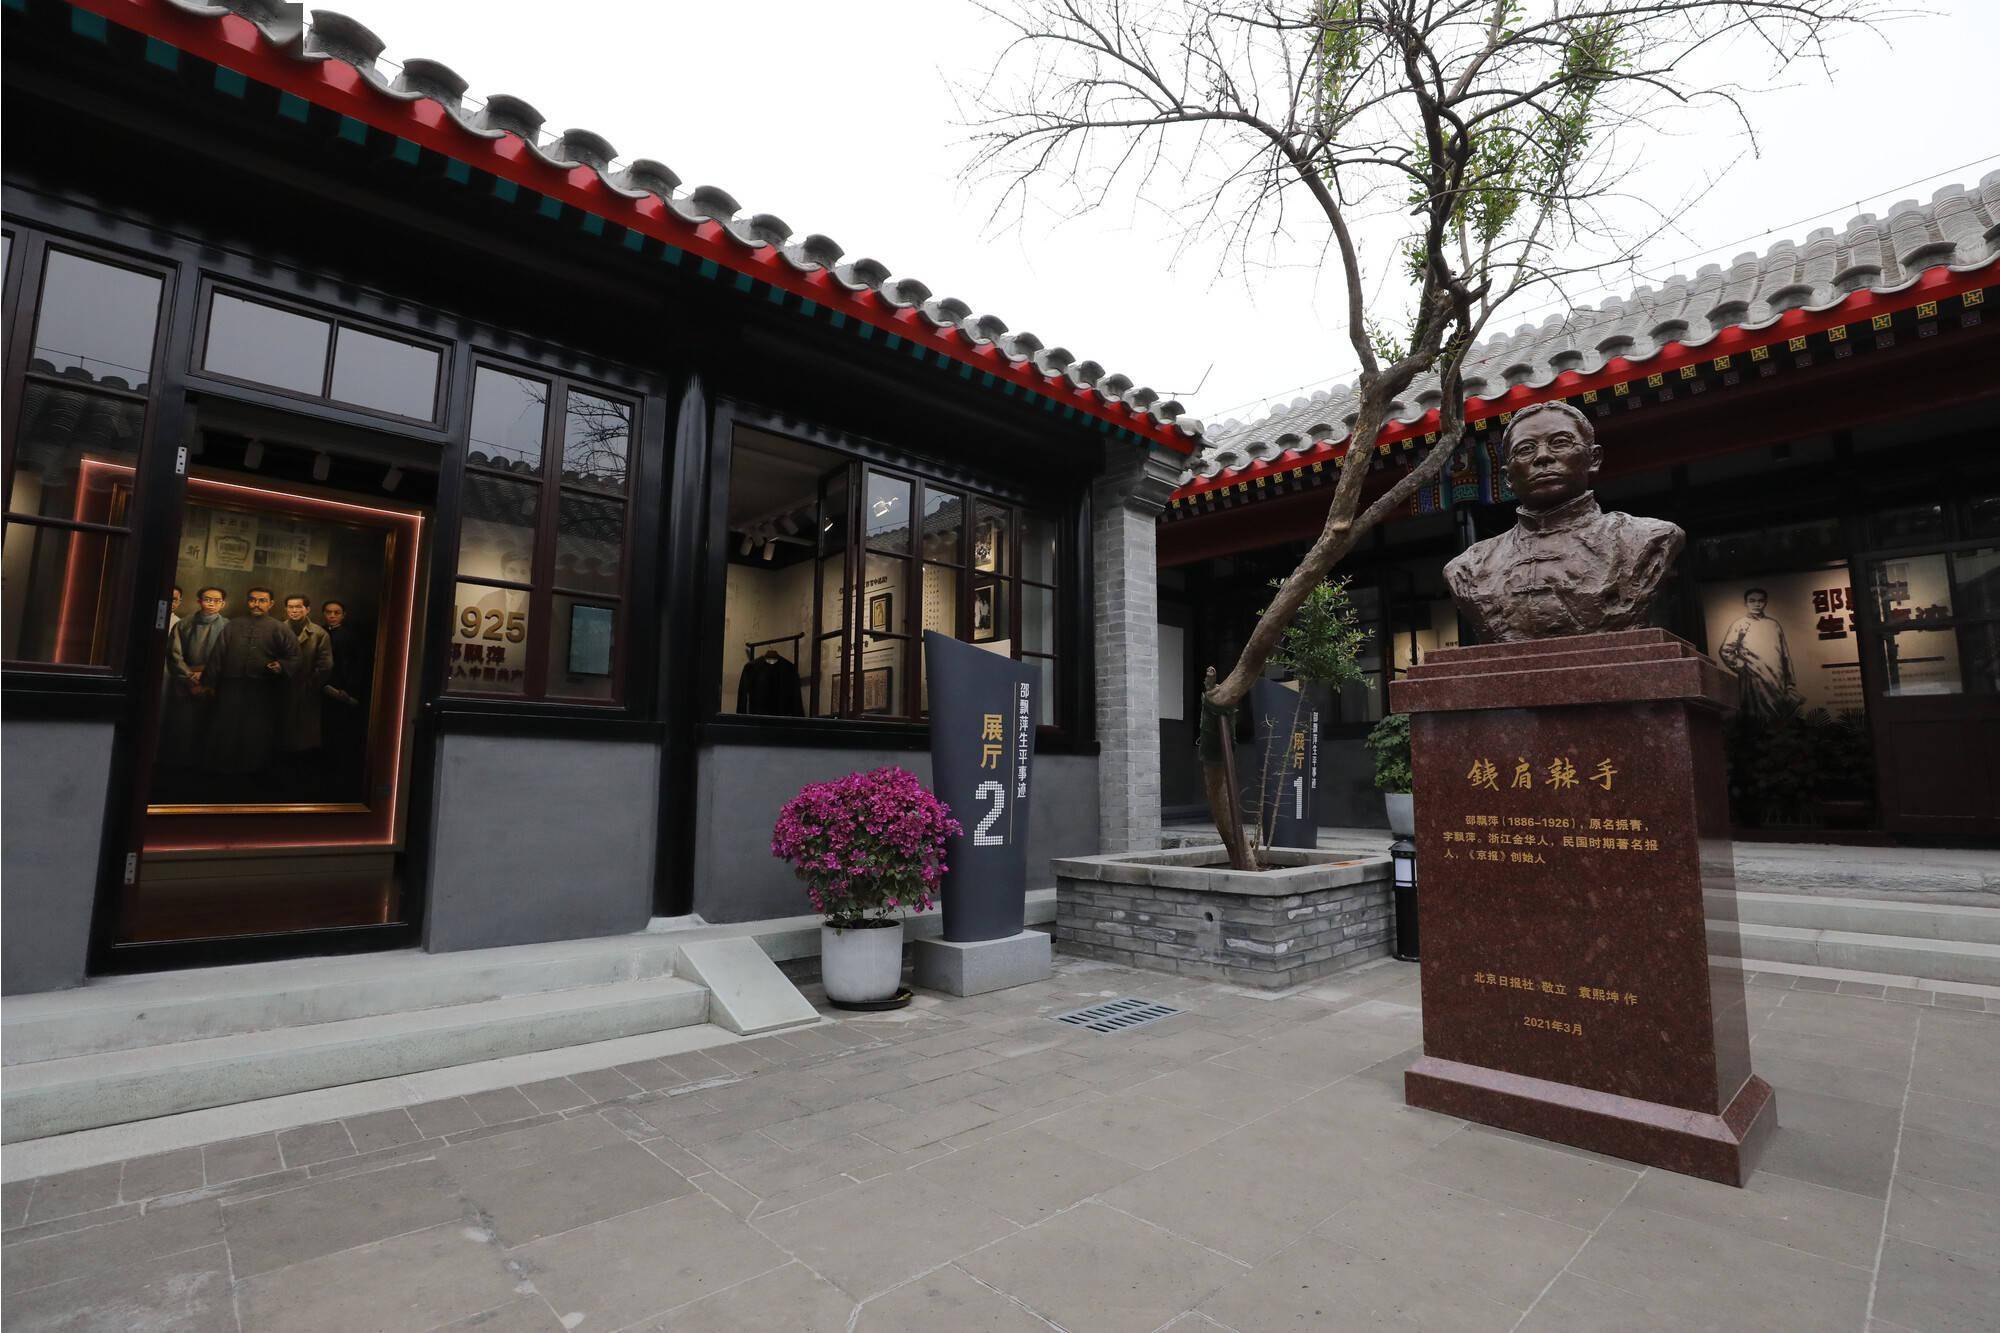 京报馆旧址将推沉浸式红色情景剧,通过角色扮演体验红色历史